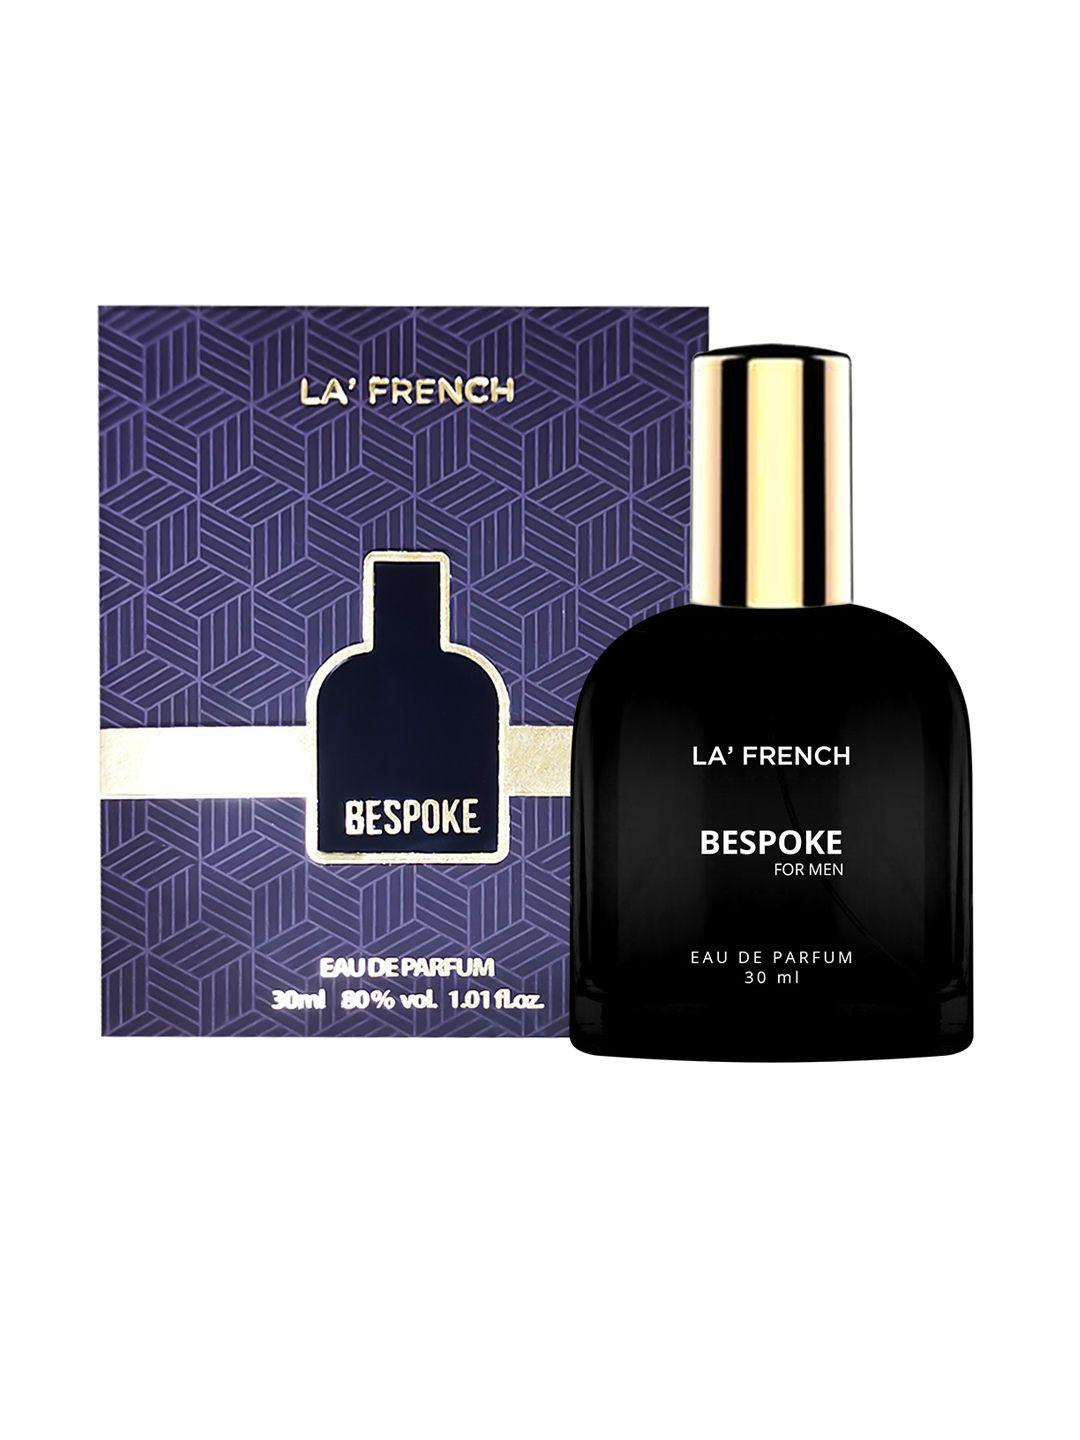 la french 2-pcs bespoke & look out long lasting eau de parfum - 30ml each